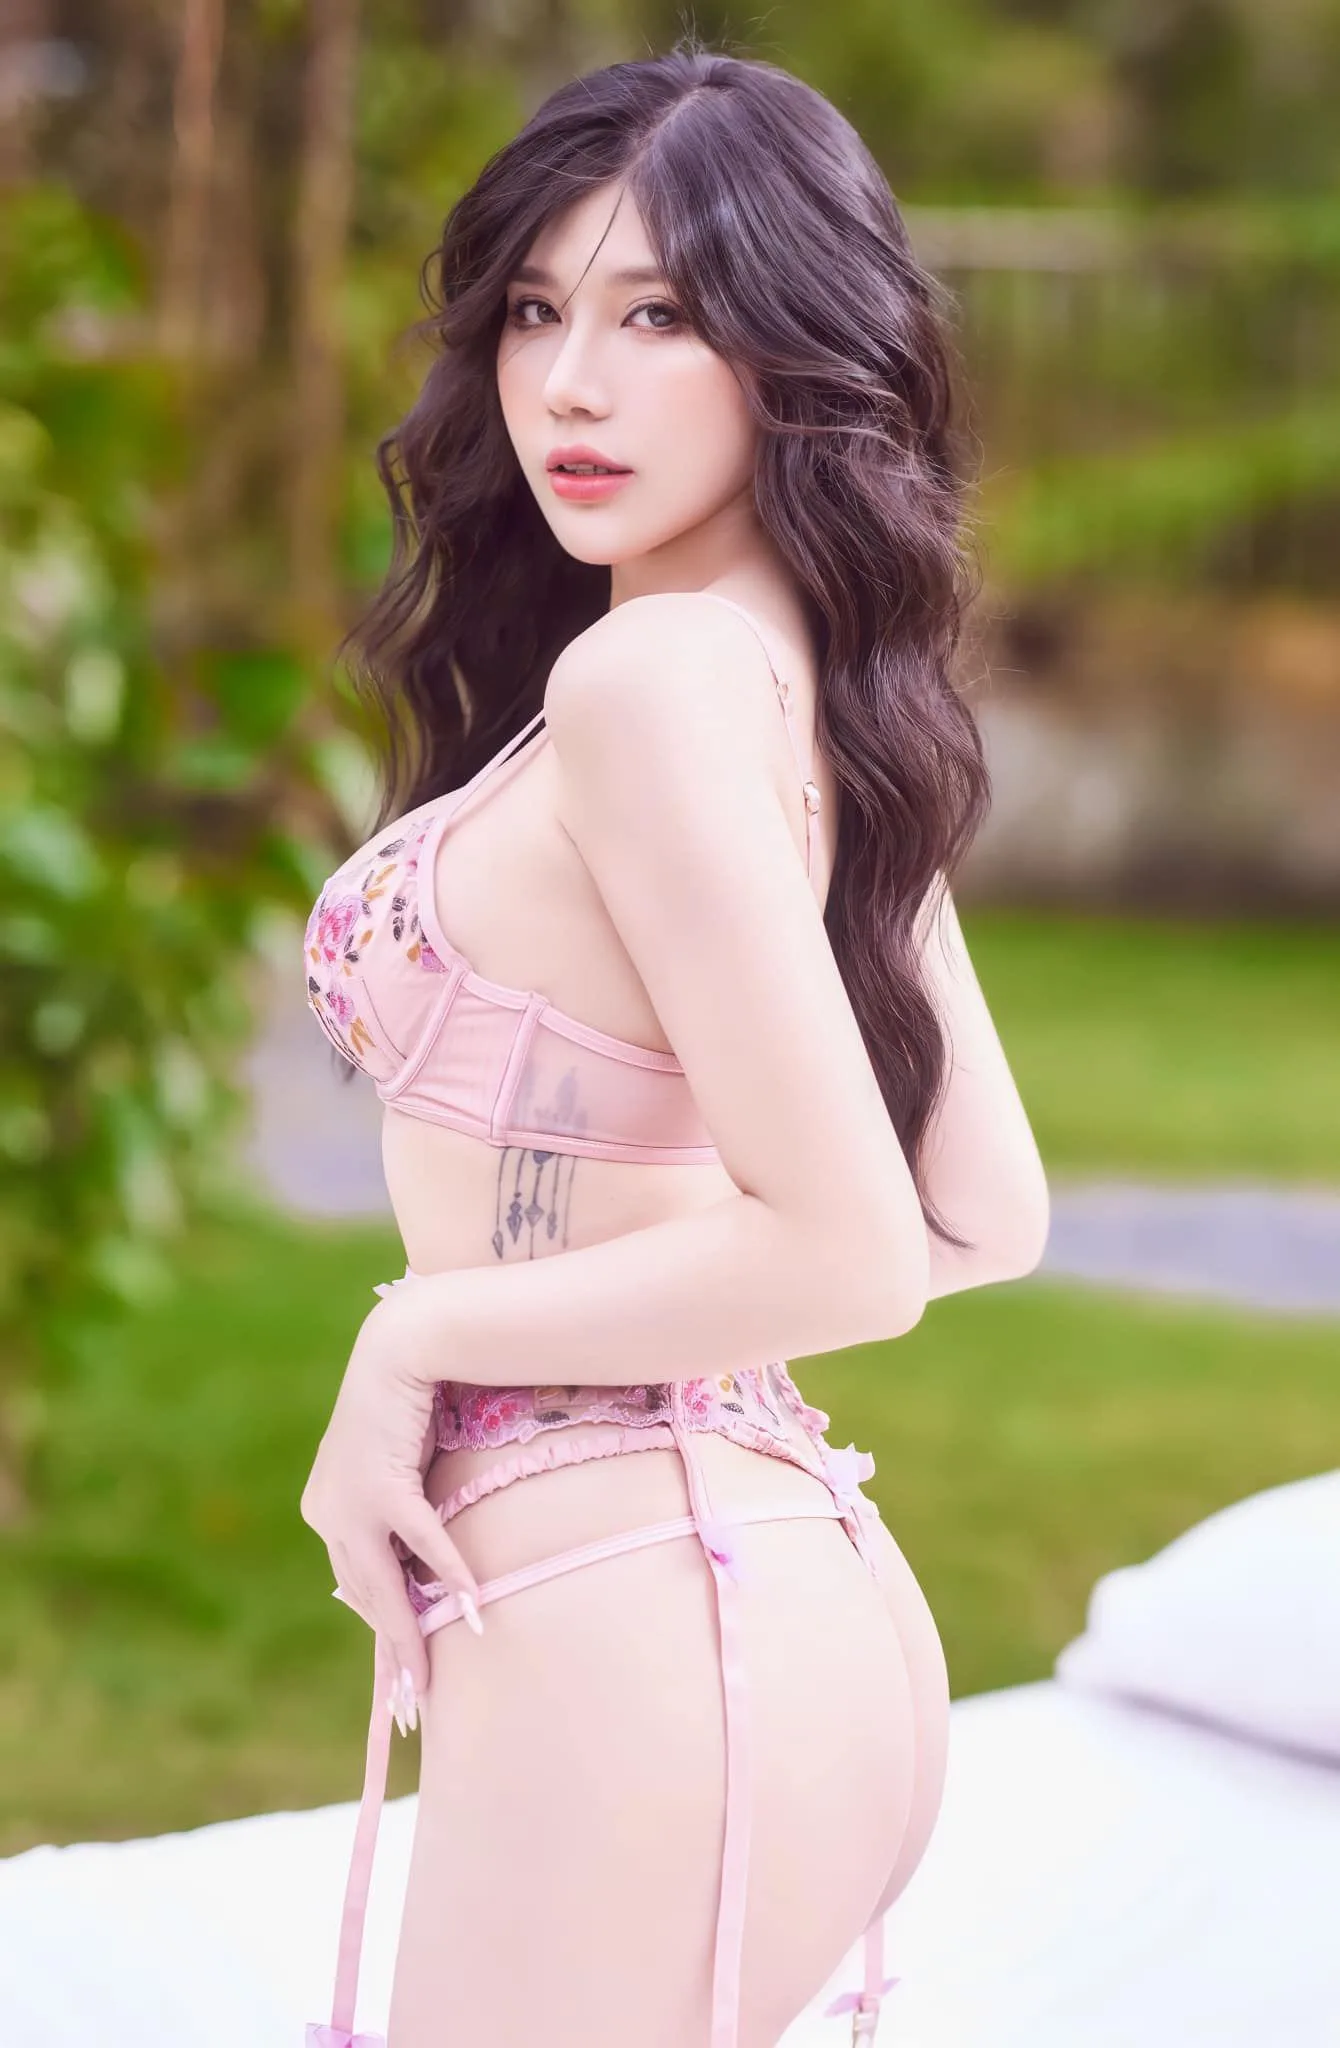 TOP Ảnh Hotgirl Nội Y Đẹp Nóng Bỏng & Gợi Cảm Nhất